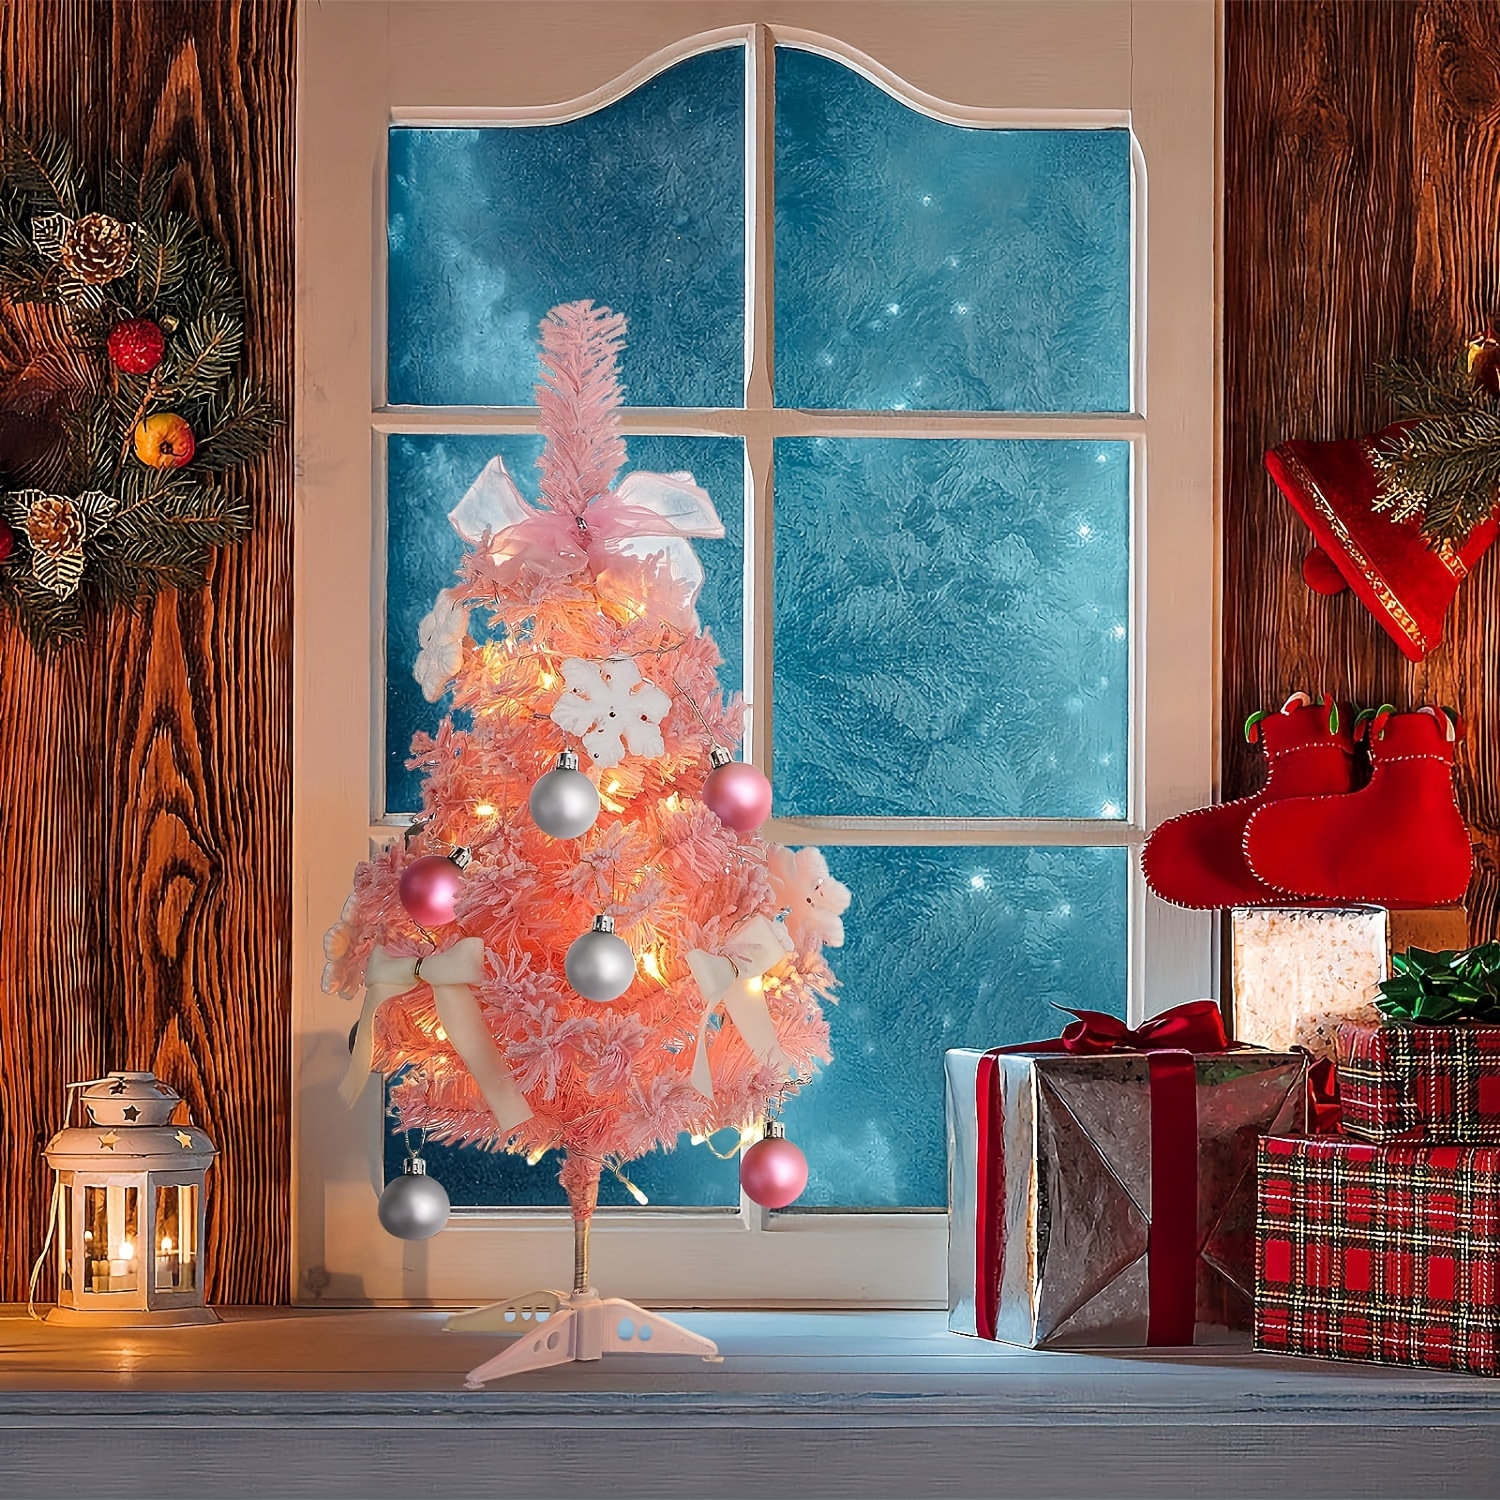 クリスマスツリー 210㎝ 雪化粧 クリスマス 屋内 屋外 インテリア 北欧 